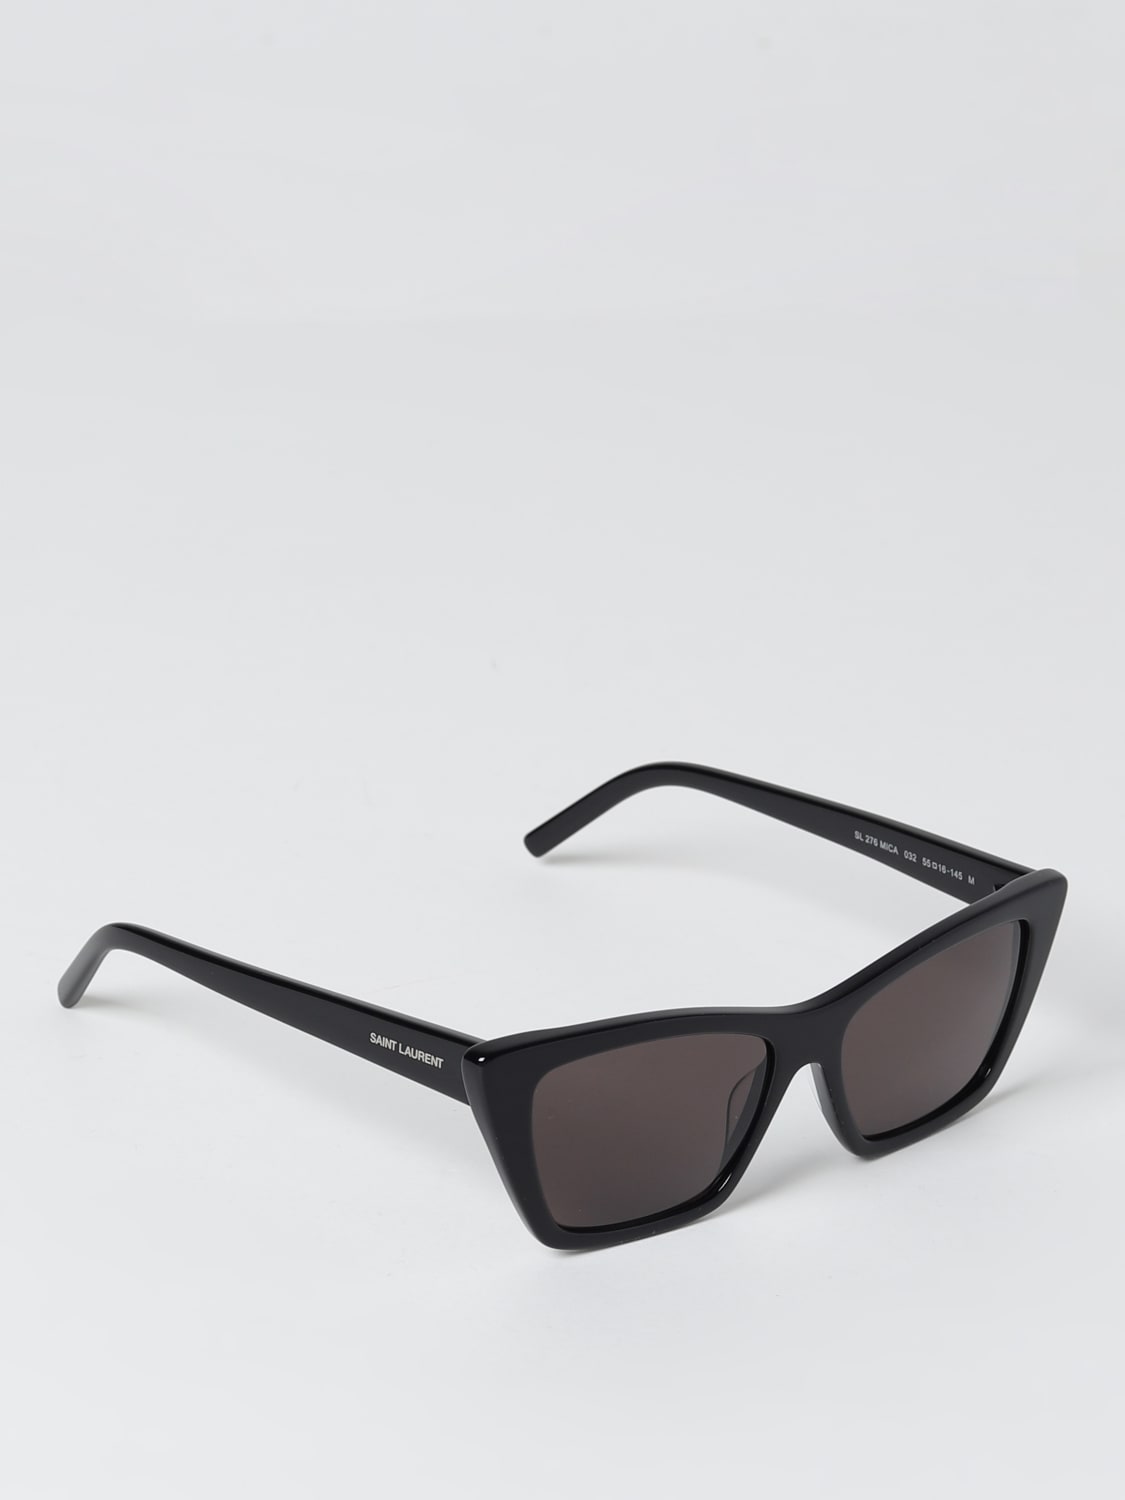 Saint Laurent Glasses and Sunglasses for Women & Men, YSL – All Eyes On Me